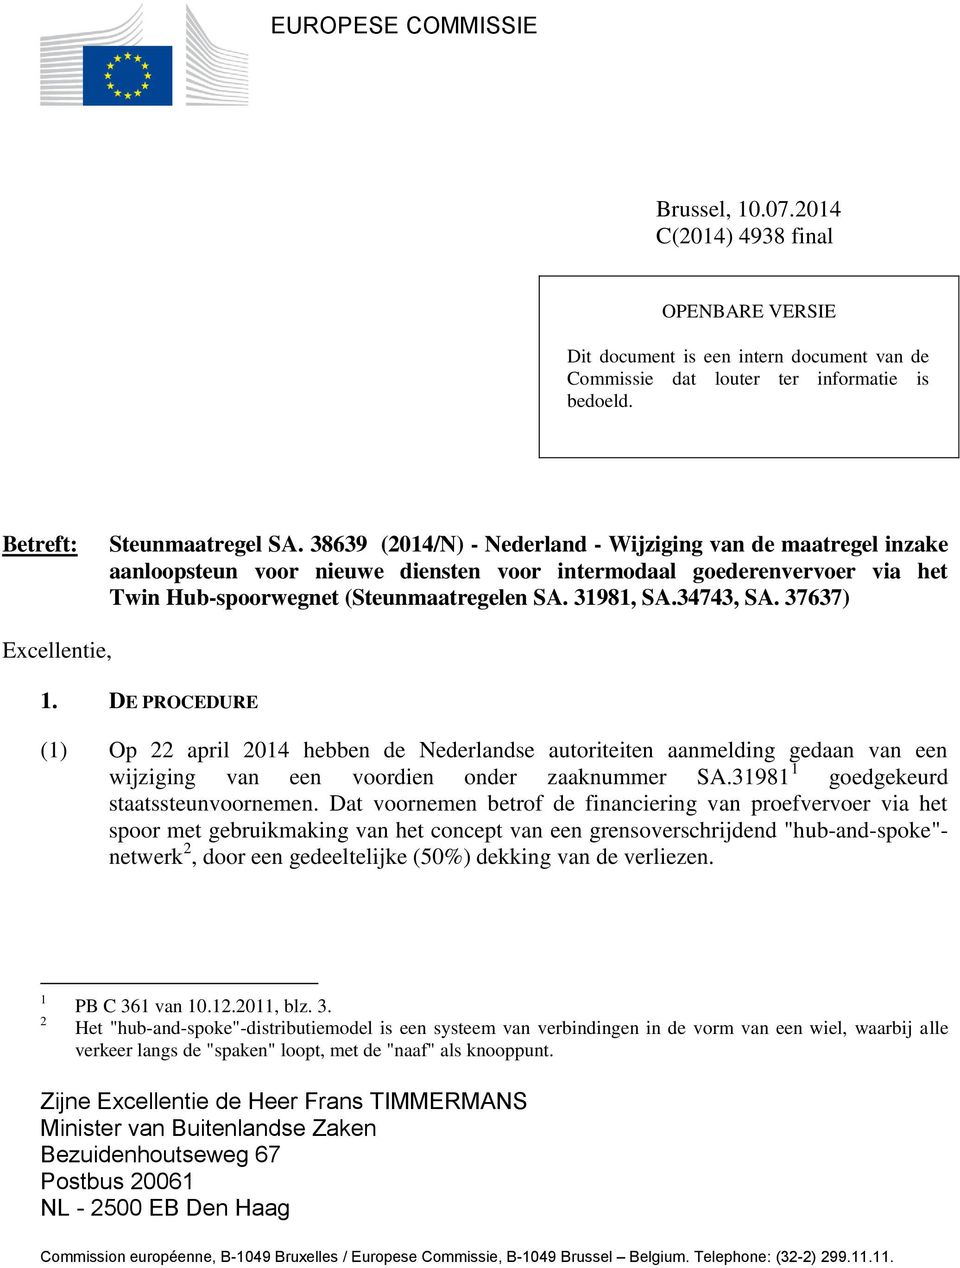 34743, SA. 37637) Excellentie, 1. DE PROCEDURE (1) Op 22 april 2014 hebben de Nederlandse autoriteiten aanmelding gedaan van een wijziging van een voordien onder zaaknummer SA.